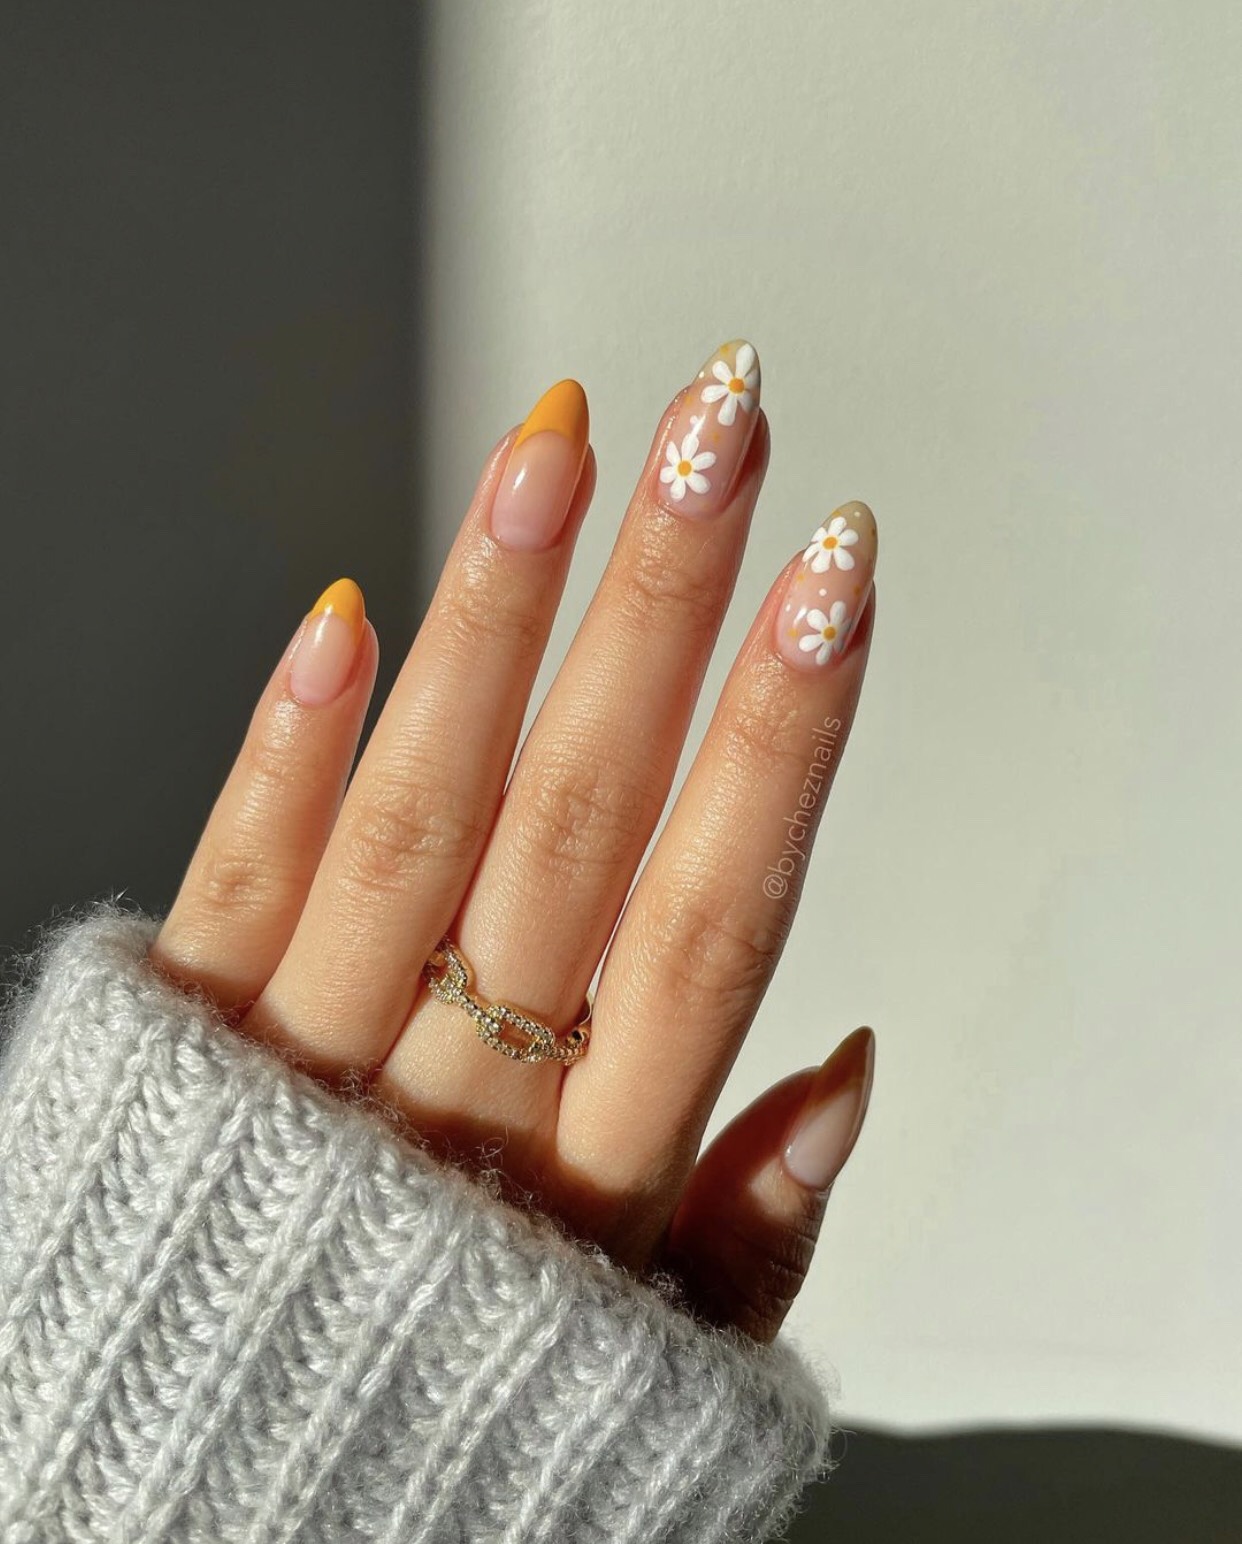 Vẽ móng tay nail hoa cúc của G Dragon - Học nails cho người mới bắt đầu | Vẽ  nails hoa cúc là trang trí thường gặp khi làm nails. Tăng thêm